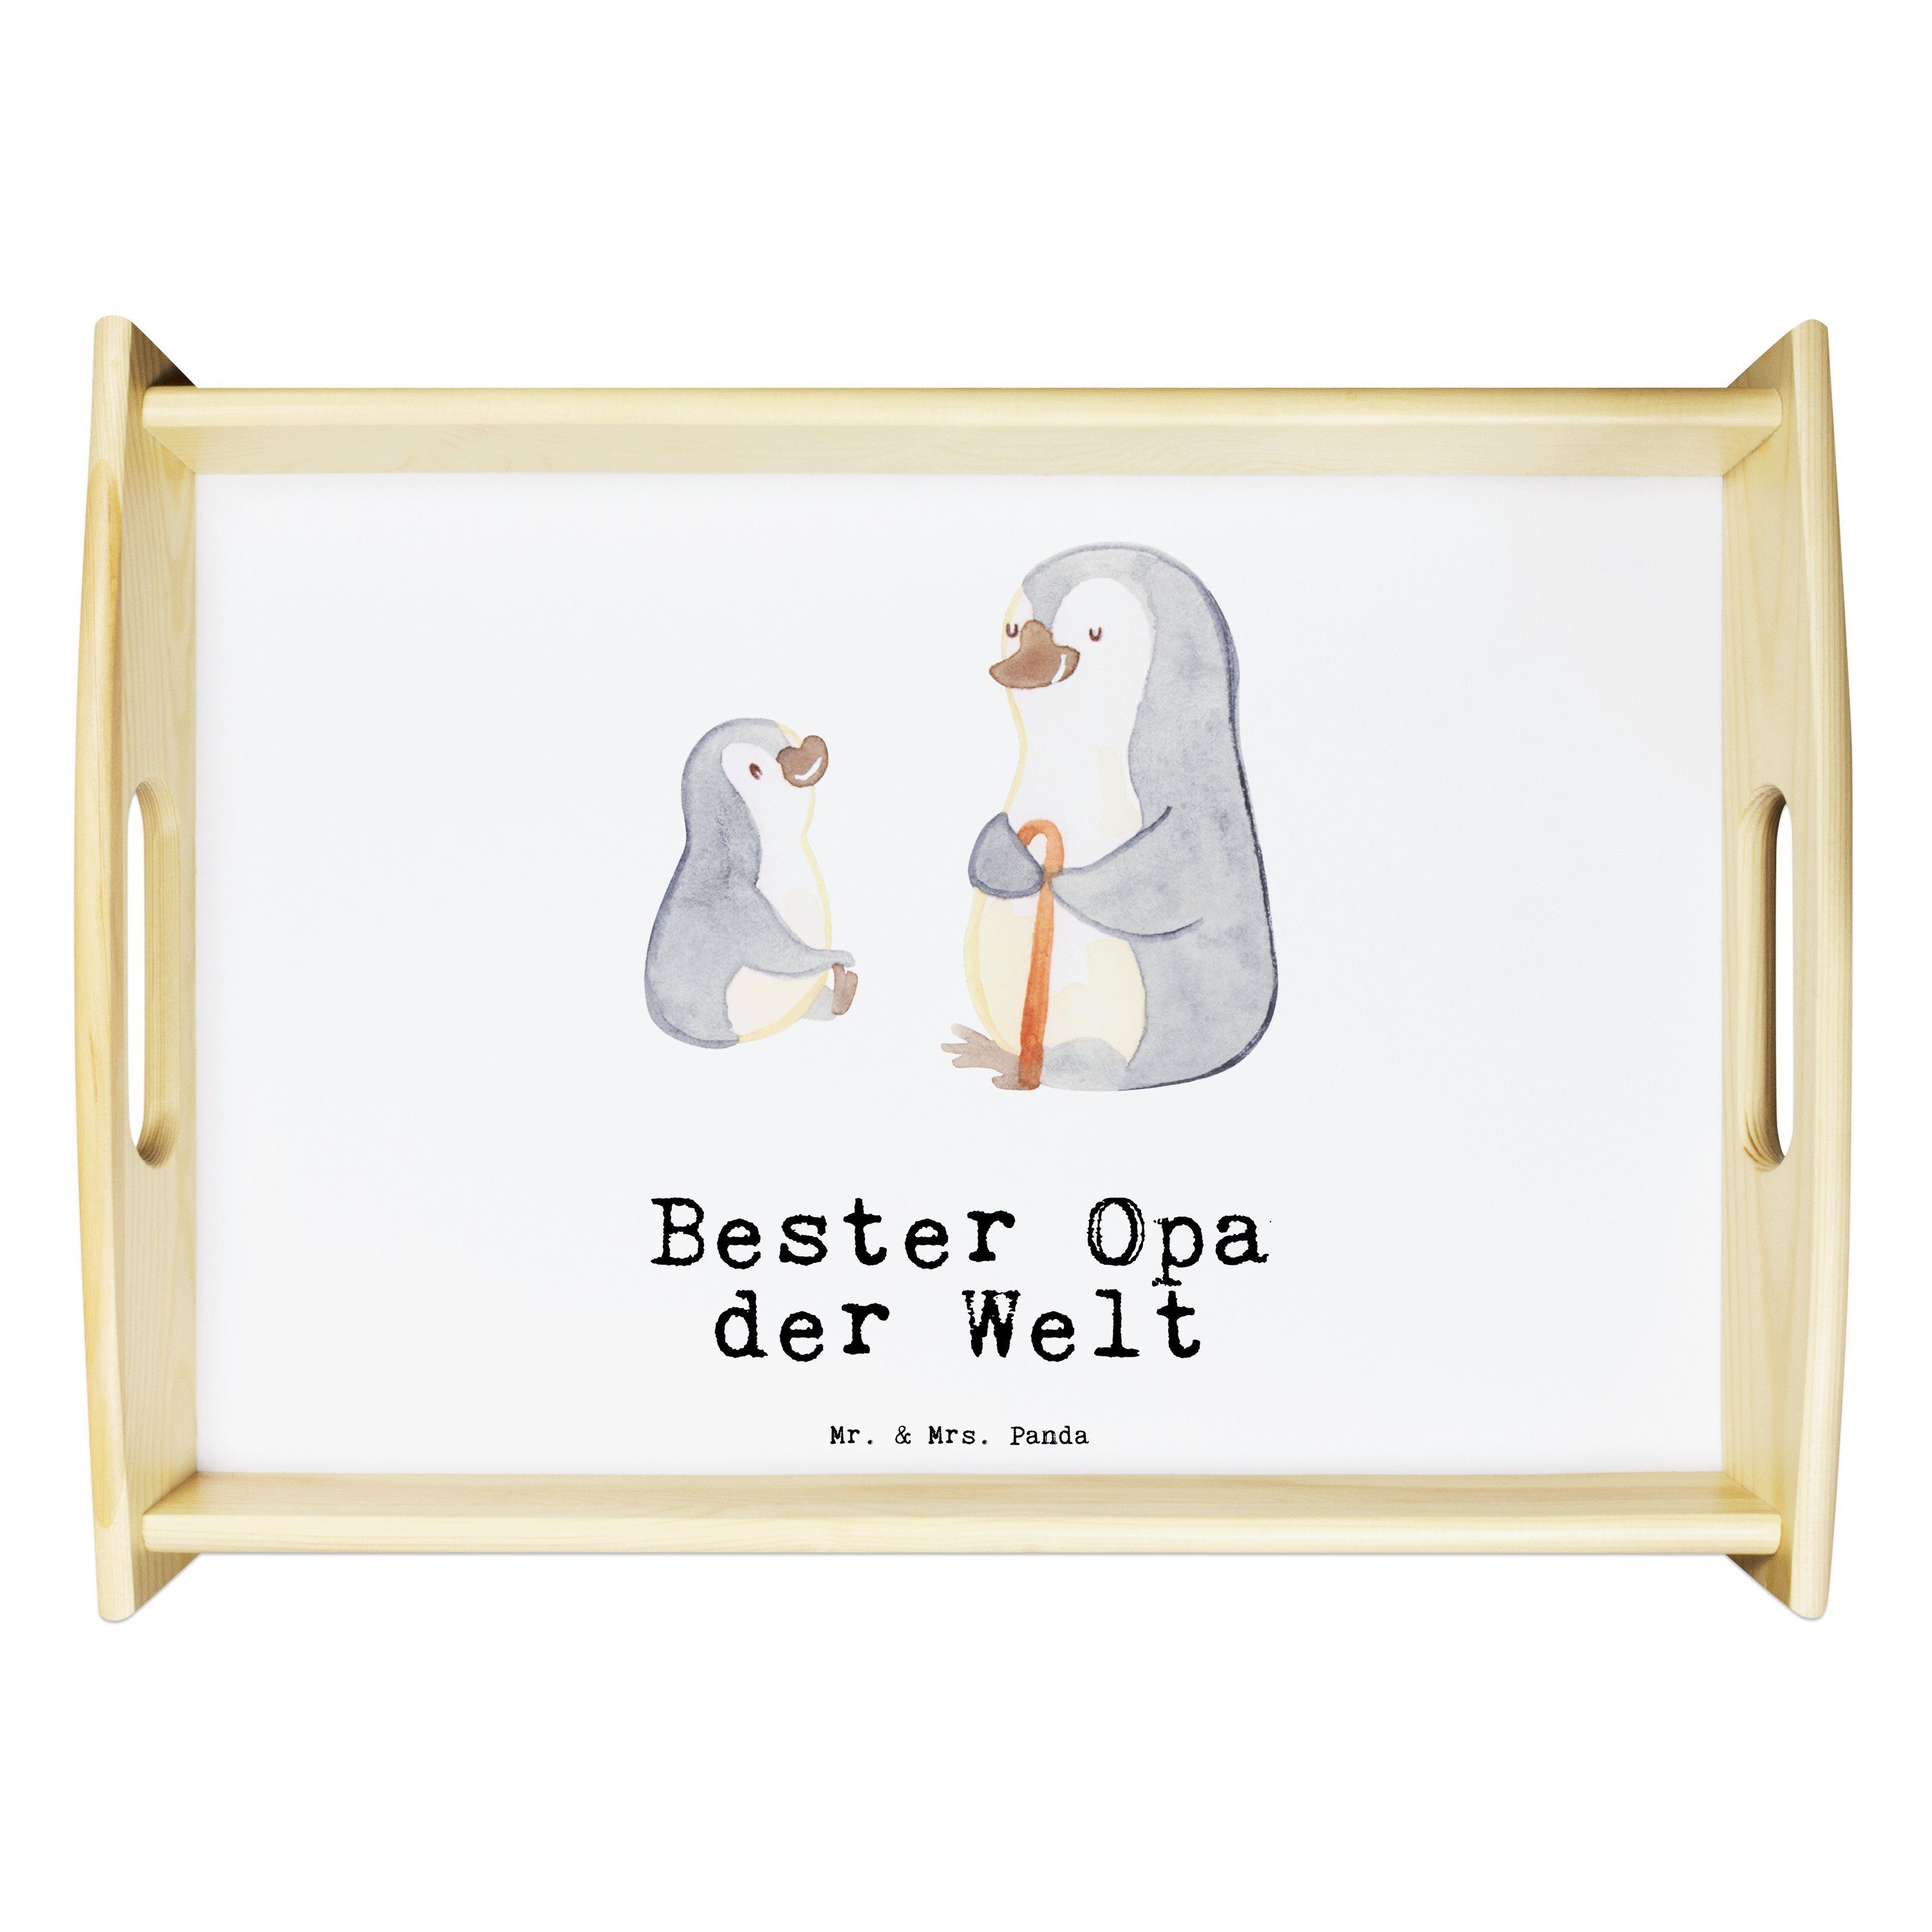 Mr. & Mrs. Panda Tablett Pinguin Bester Opa der Welt - Weiß - Geschenk, Geburtstagsgeschenk, G, Echtholz lasiert, (1-tlg)